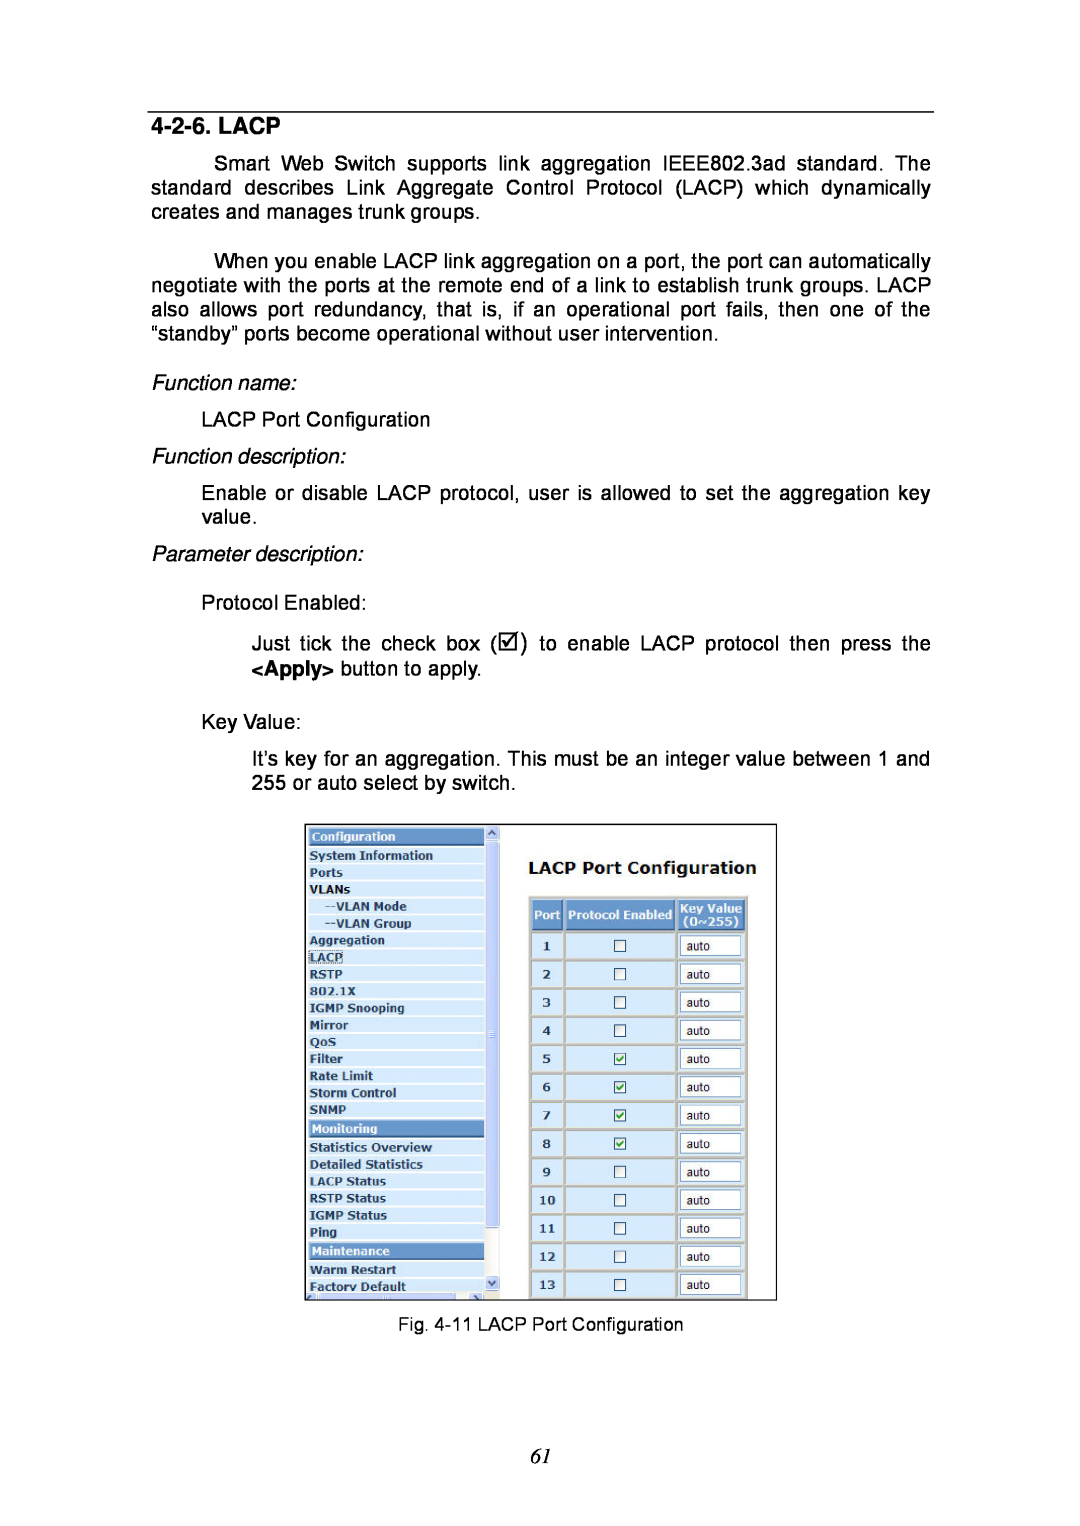 KTI Networks KGS-2404 manual Lacp, Function name, Function description, Parameter description 